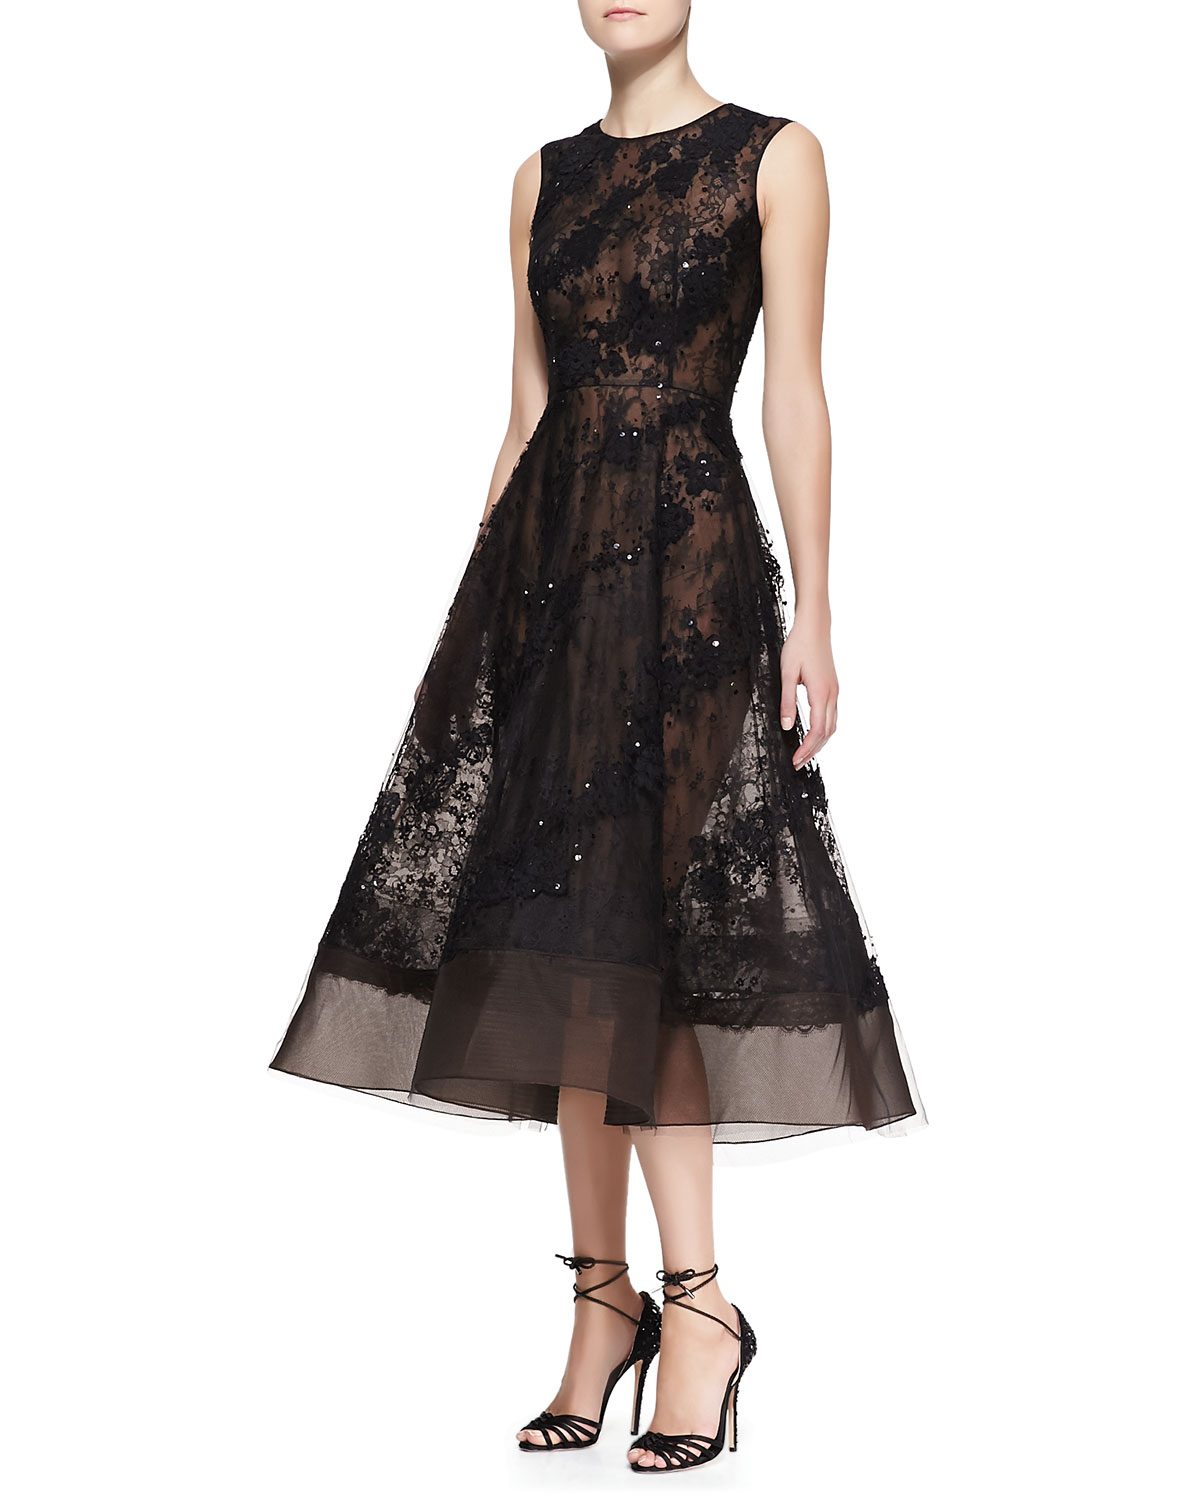 Oscar de la renta Sleeveless Sheer Lace Beaded Dress in Black | Lyst